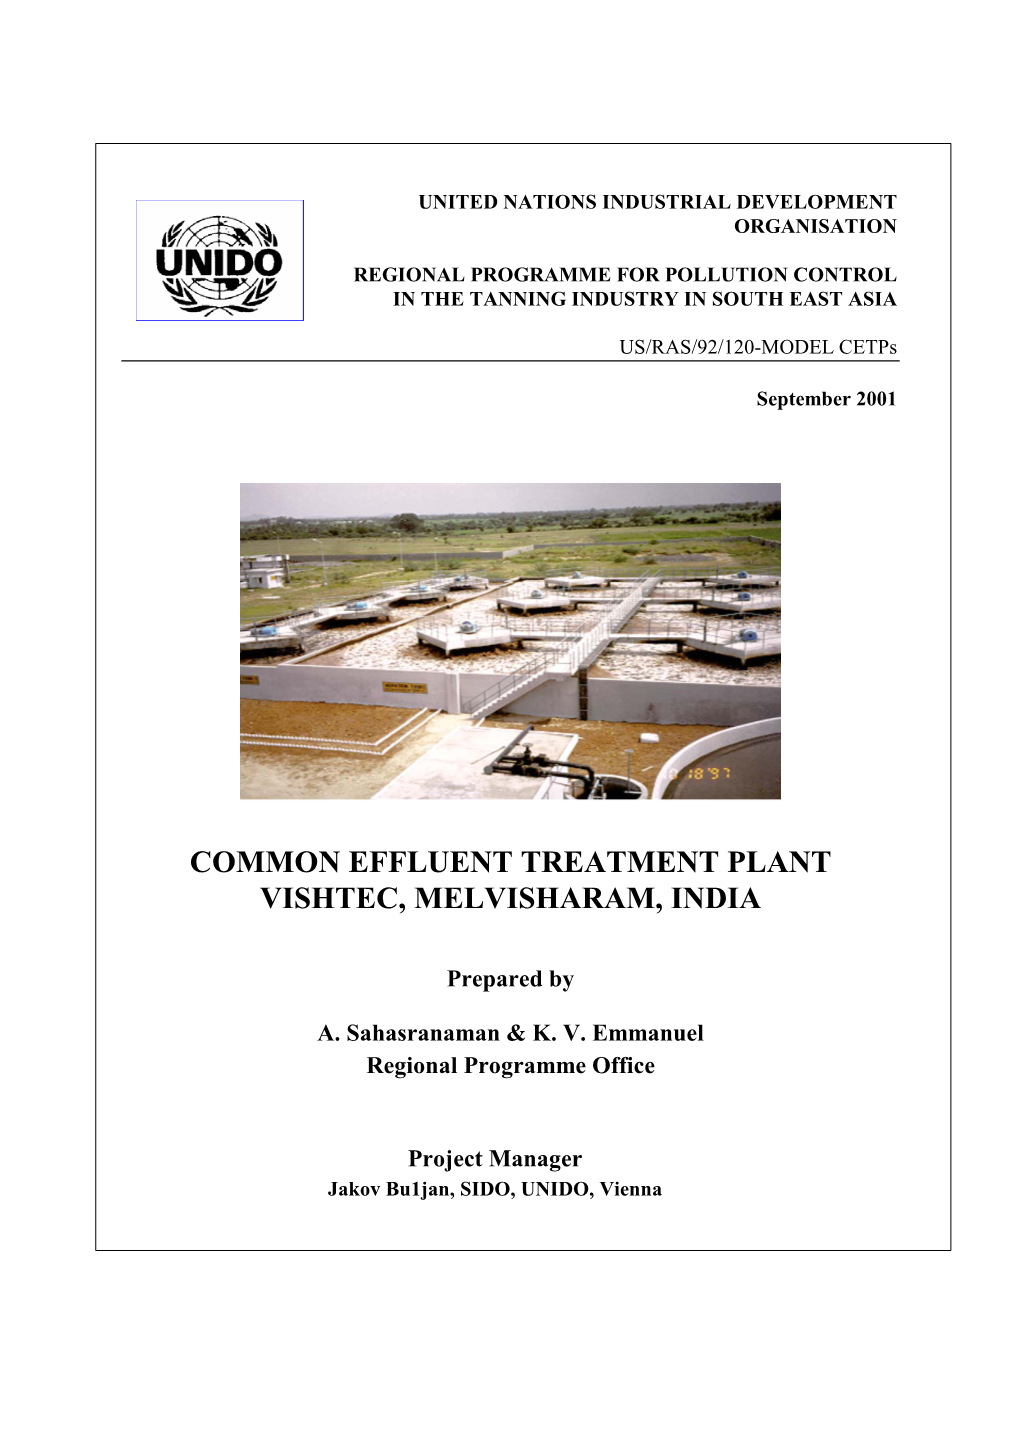 Common Effluent Treatment Plant Vishtec, Melvisharam, India